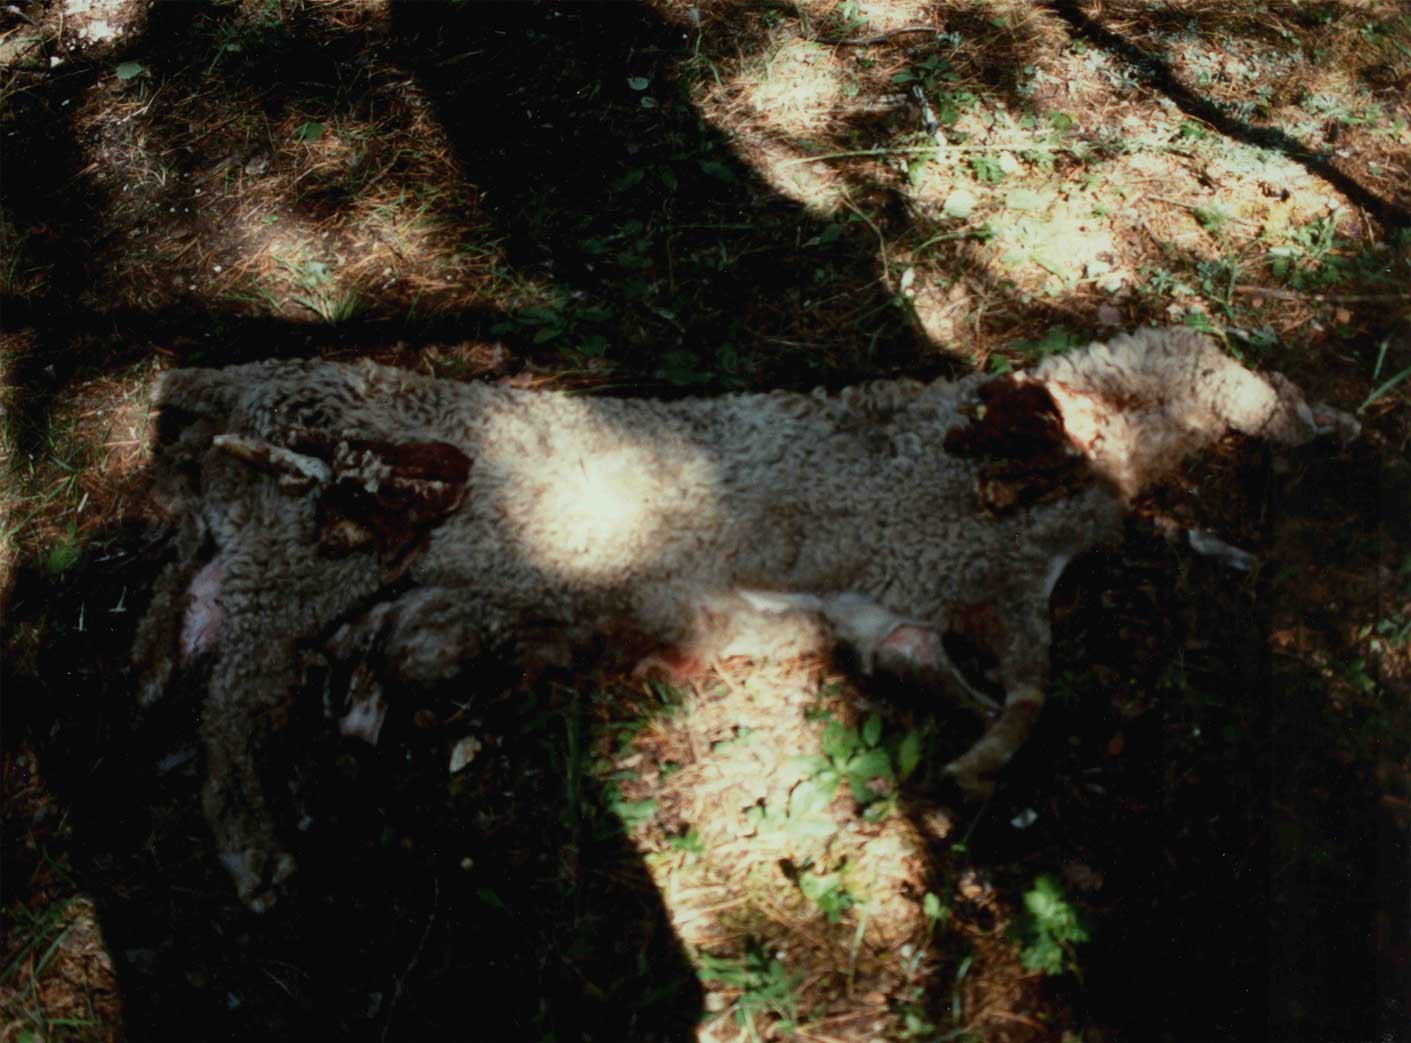 Az ősöknek felajánlott porciók, melyek az áldozati állatokat szimbolizálják a nyári családi szertartáson (tajilgan) (Sántha István felvétele Nyugat-Burjátföldön 1998 nyarán)